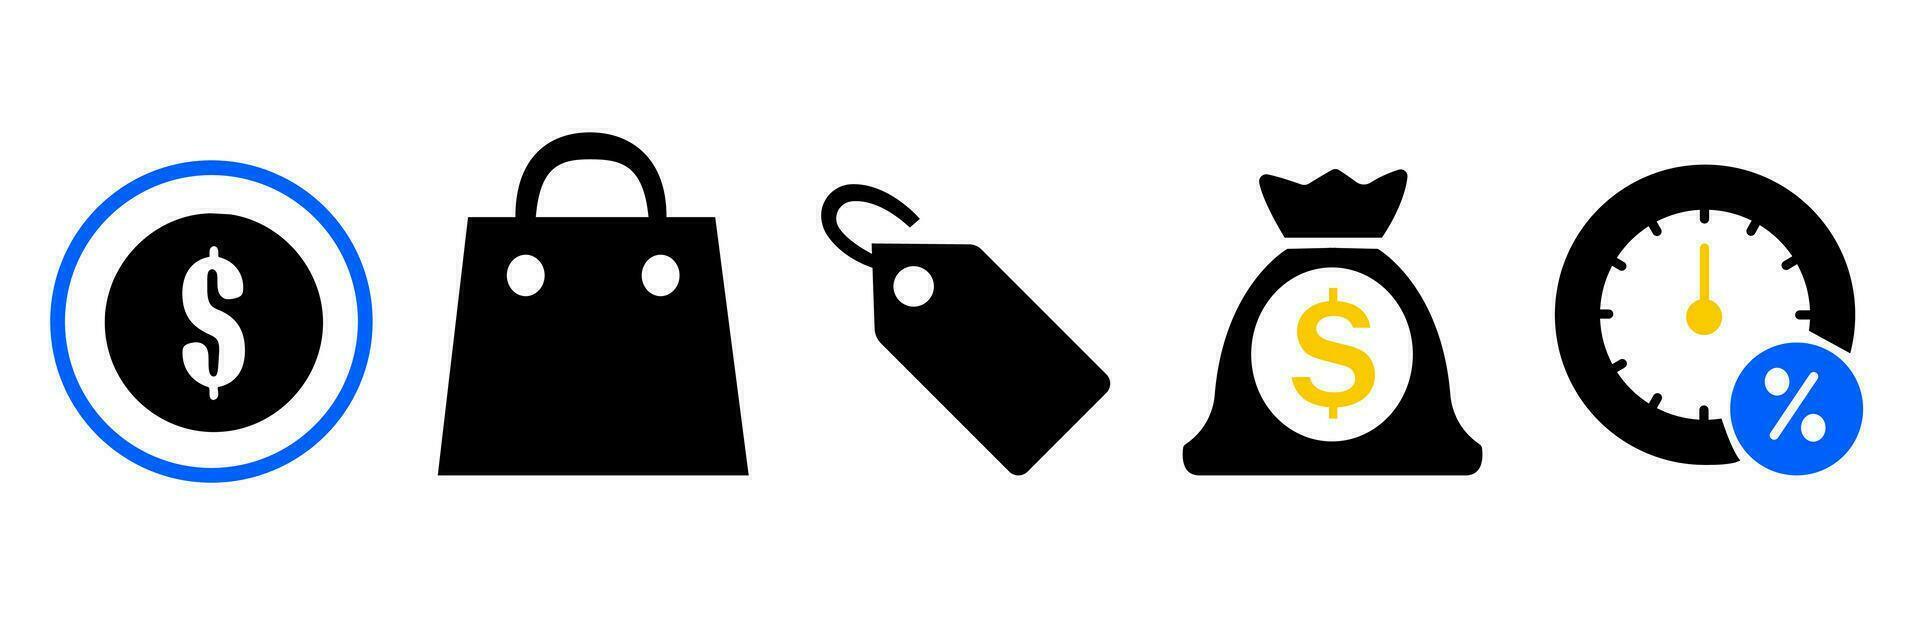 noir Vendredi icône ensemble, en ligne achats sur une portable promu Ventes à réduit symbole concept vecteur